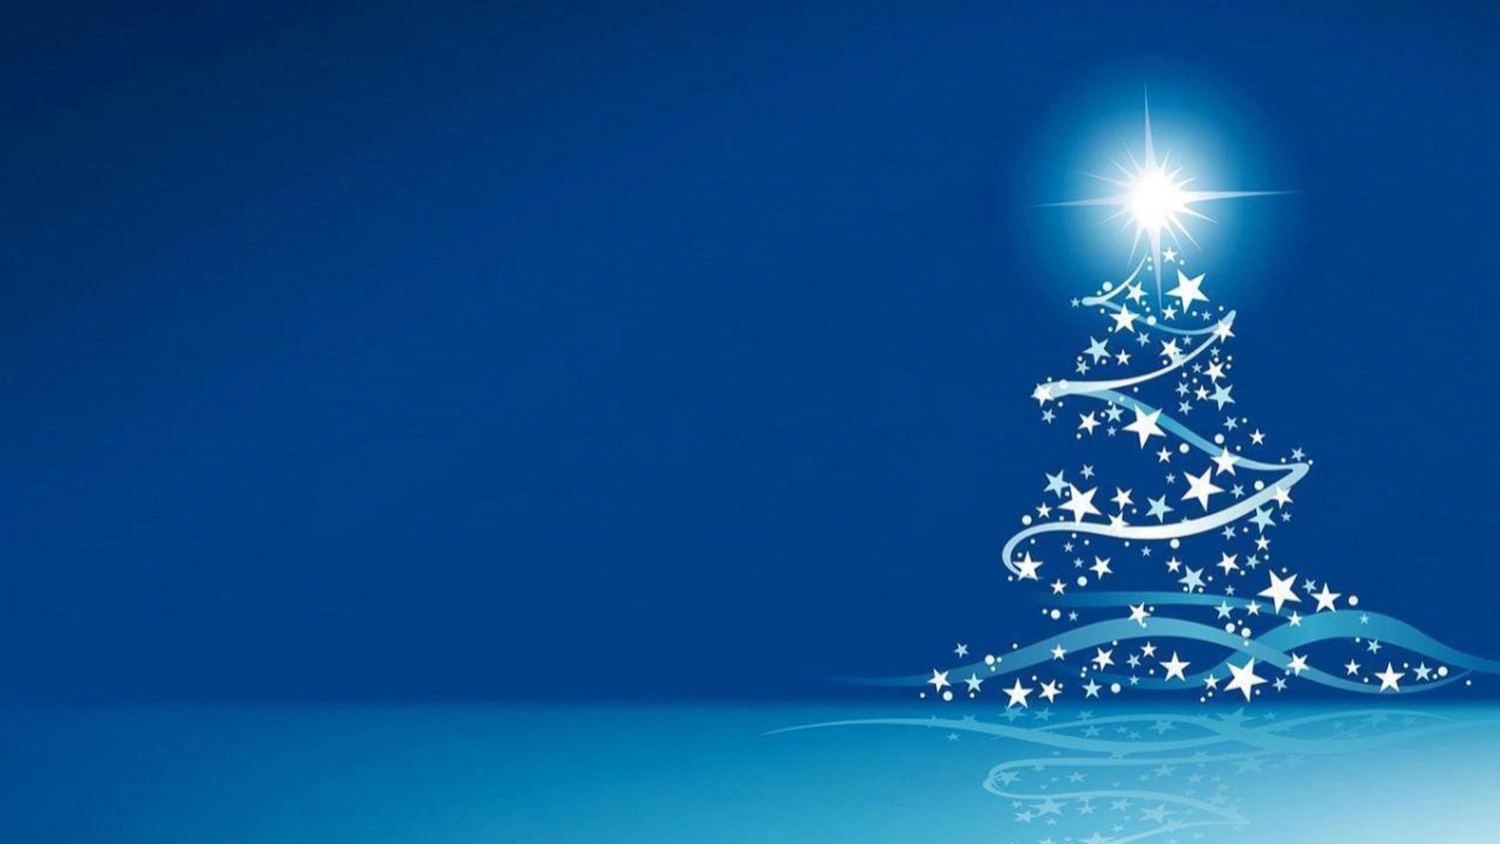 Hình nền Giáng Sinh màu xanh dương cây thông lấp lánh